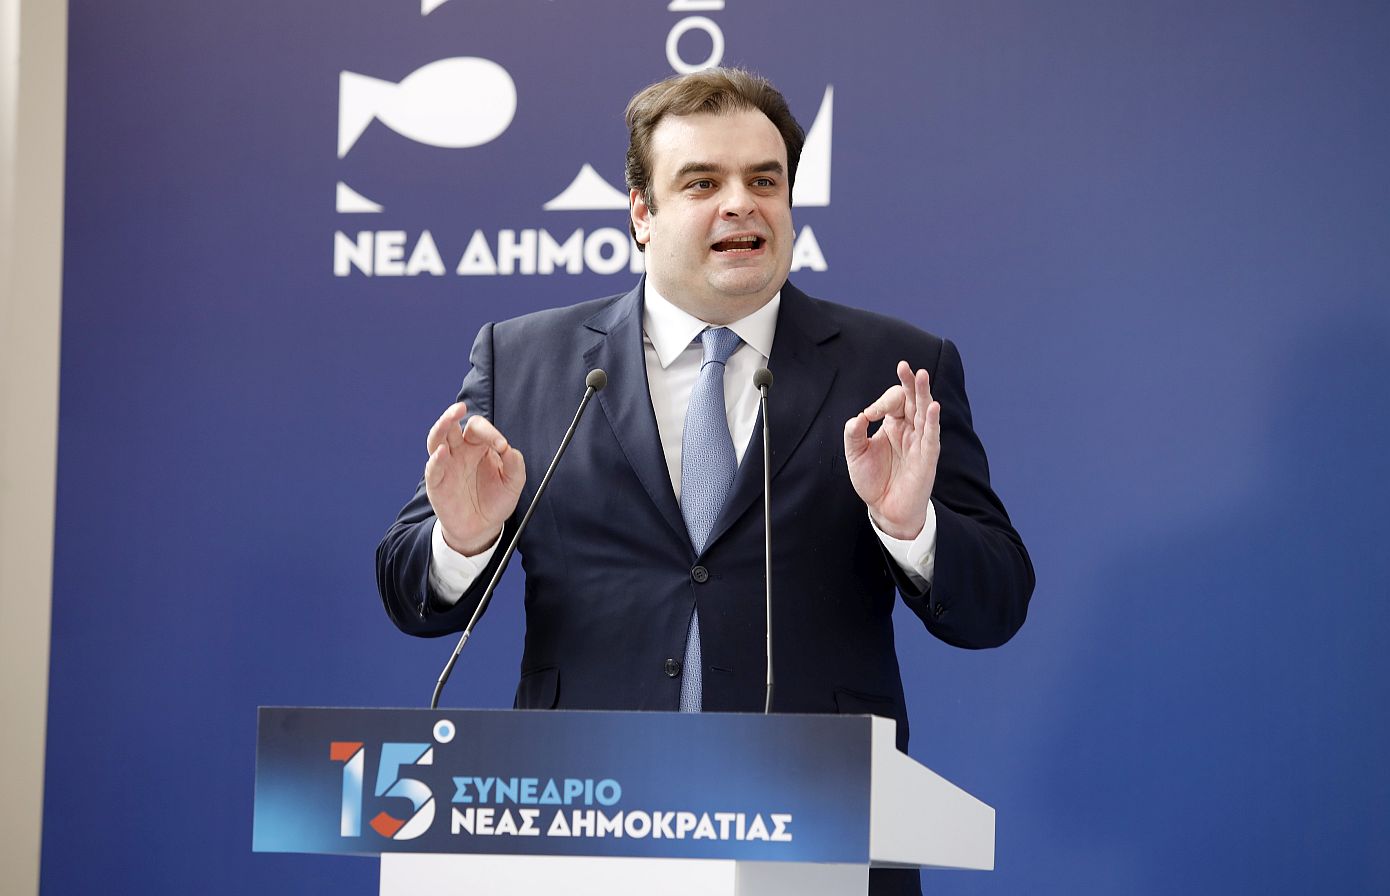 Πιερρακάκης: Δεν υπάρχει χαλαρή ψήφος, υπάρχει μόνο συνειδητή ψήφος και ένα μήνυμα Ότι η Ελλάδα δεν μπορεί να περιμένει